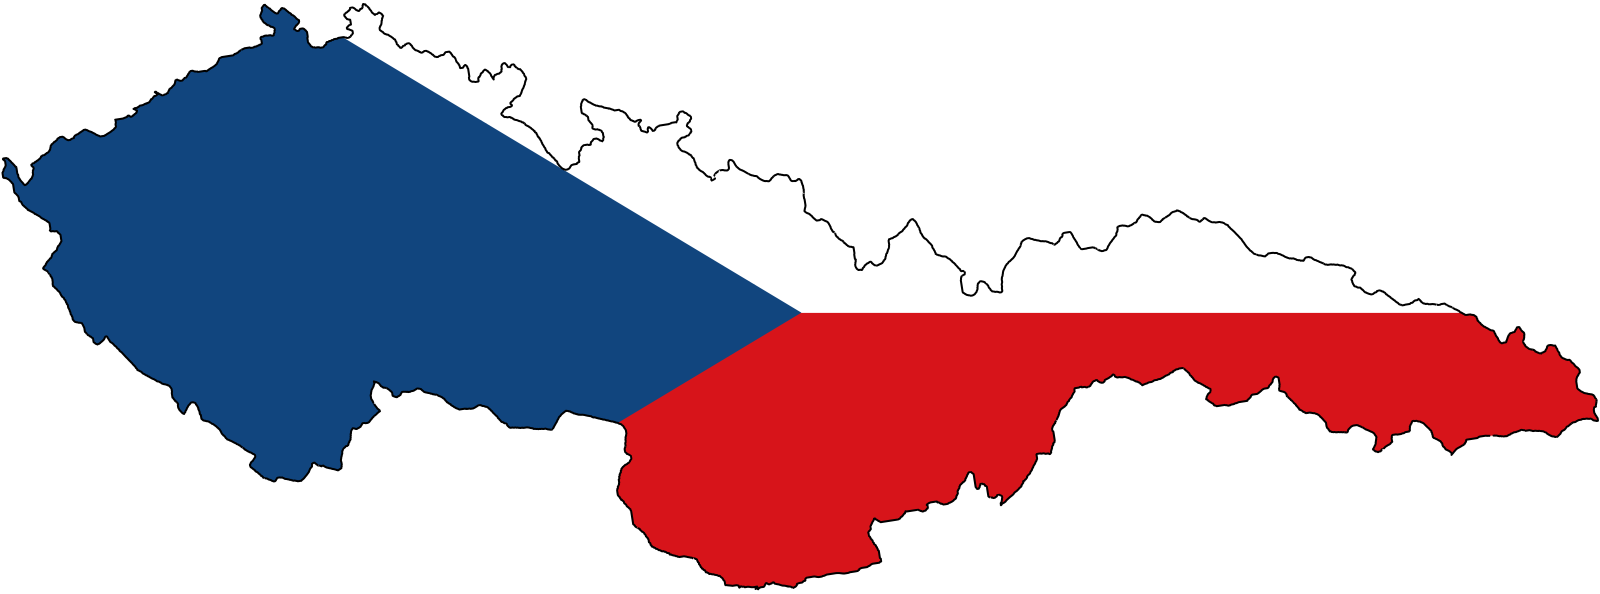 Границы чехословакии. Карта Чехословакии 1936. Флаг Чехословакии 1939. Флаг Чехословакии 1918.